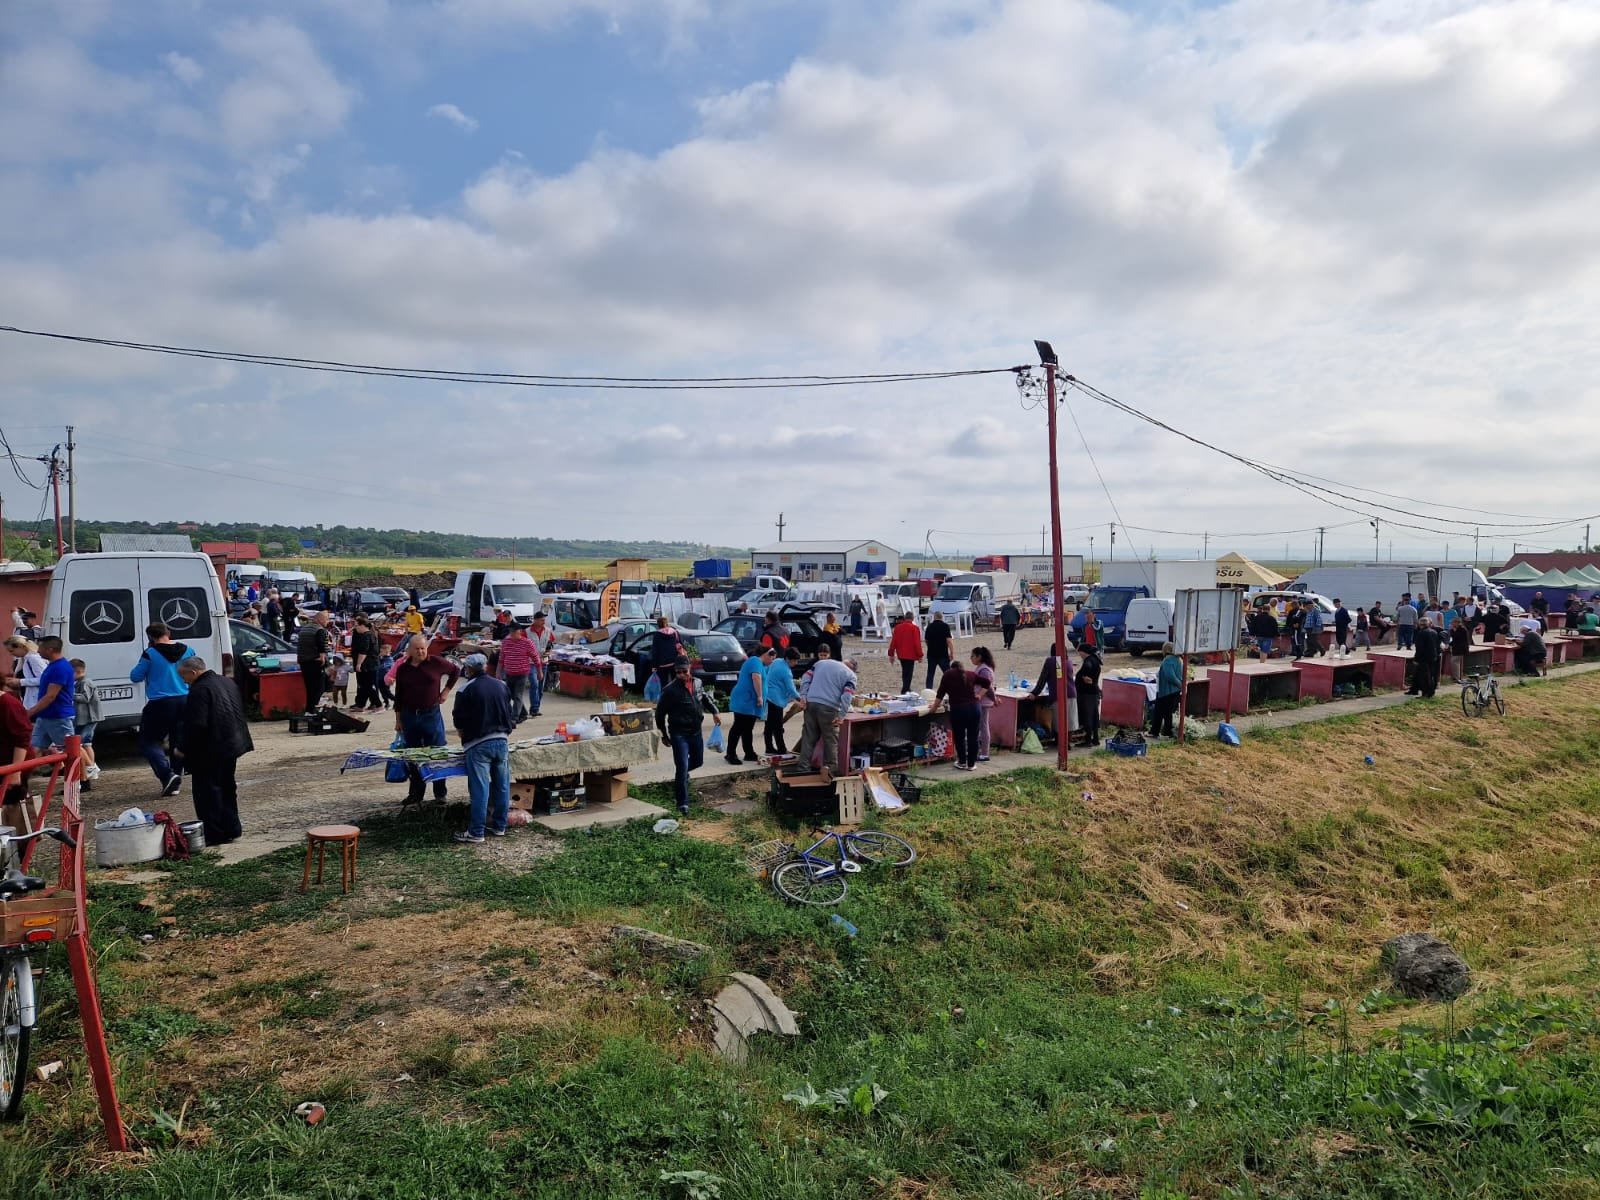  Atmosferă de târg la Cârniceni, în comuna Tiganasi: Zeci de căruţe şi sute de oameni adunaţi la eveniment (VIDEO)